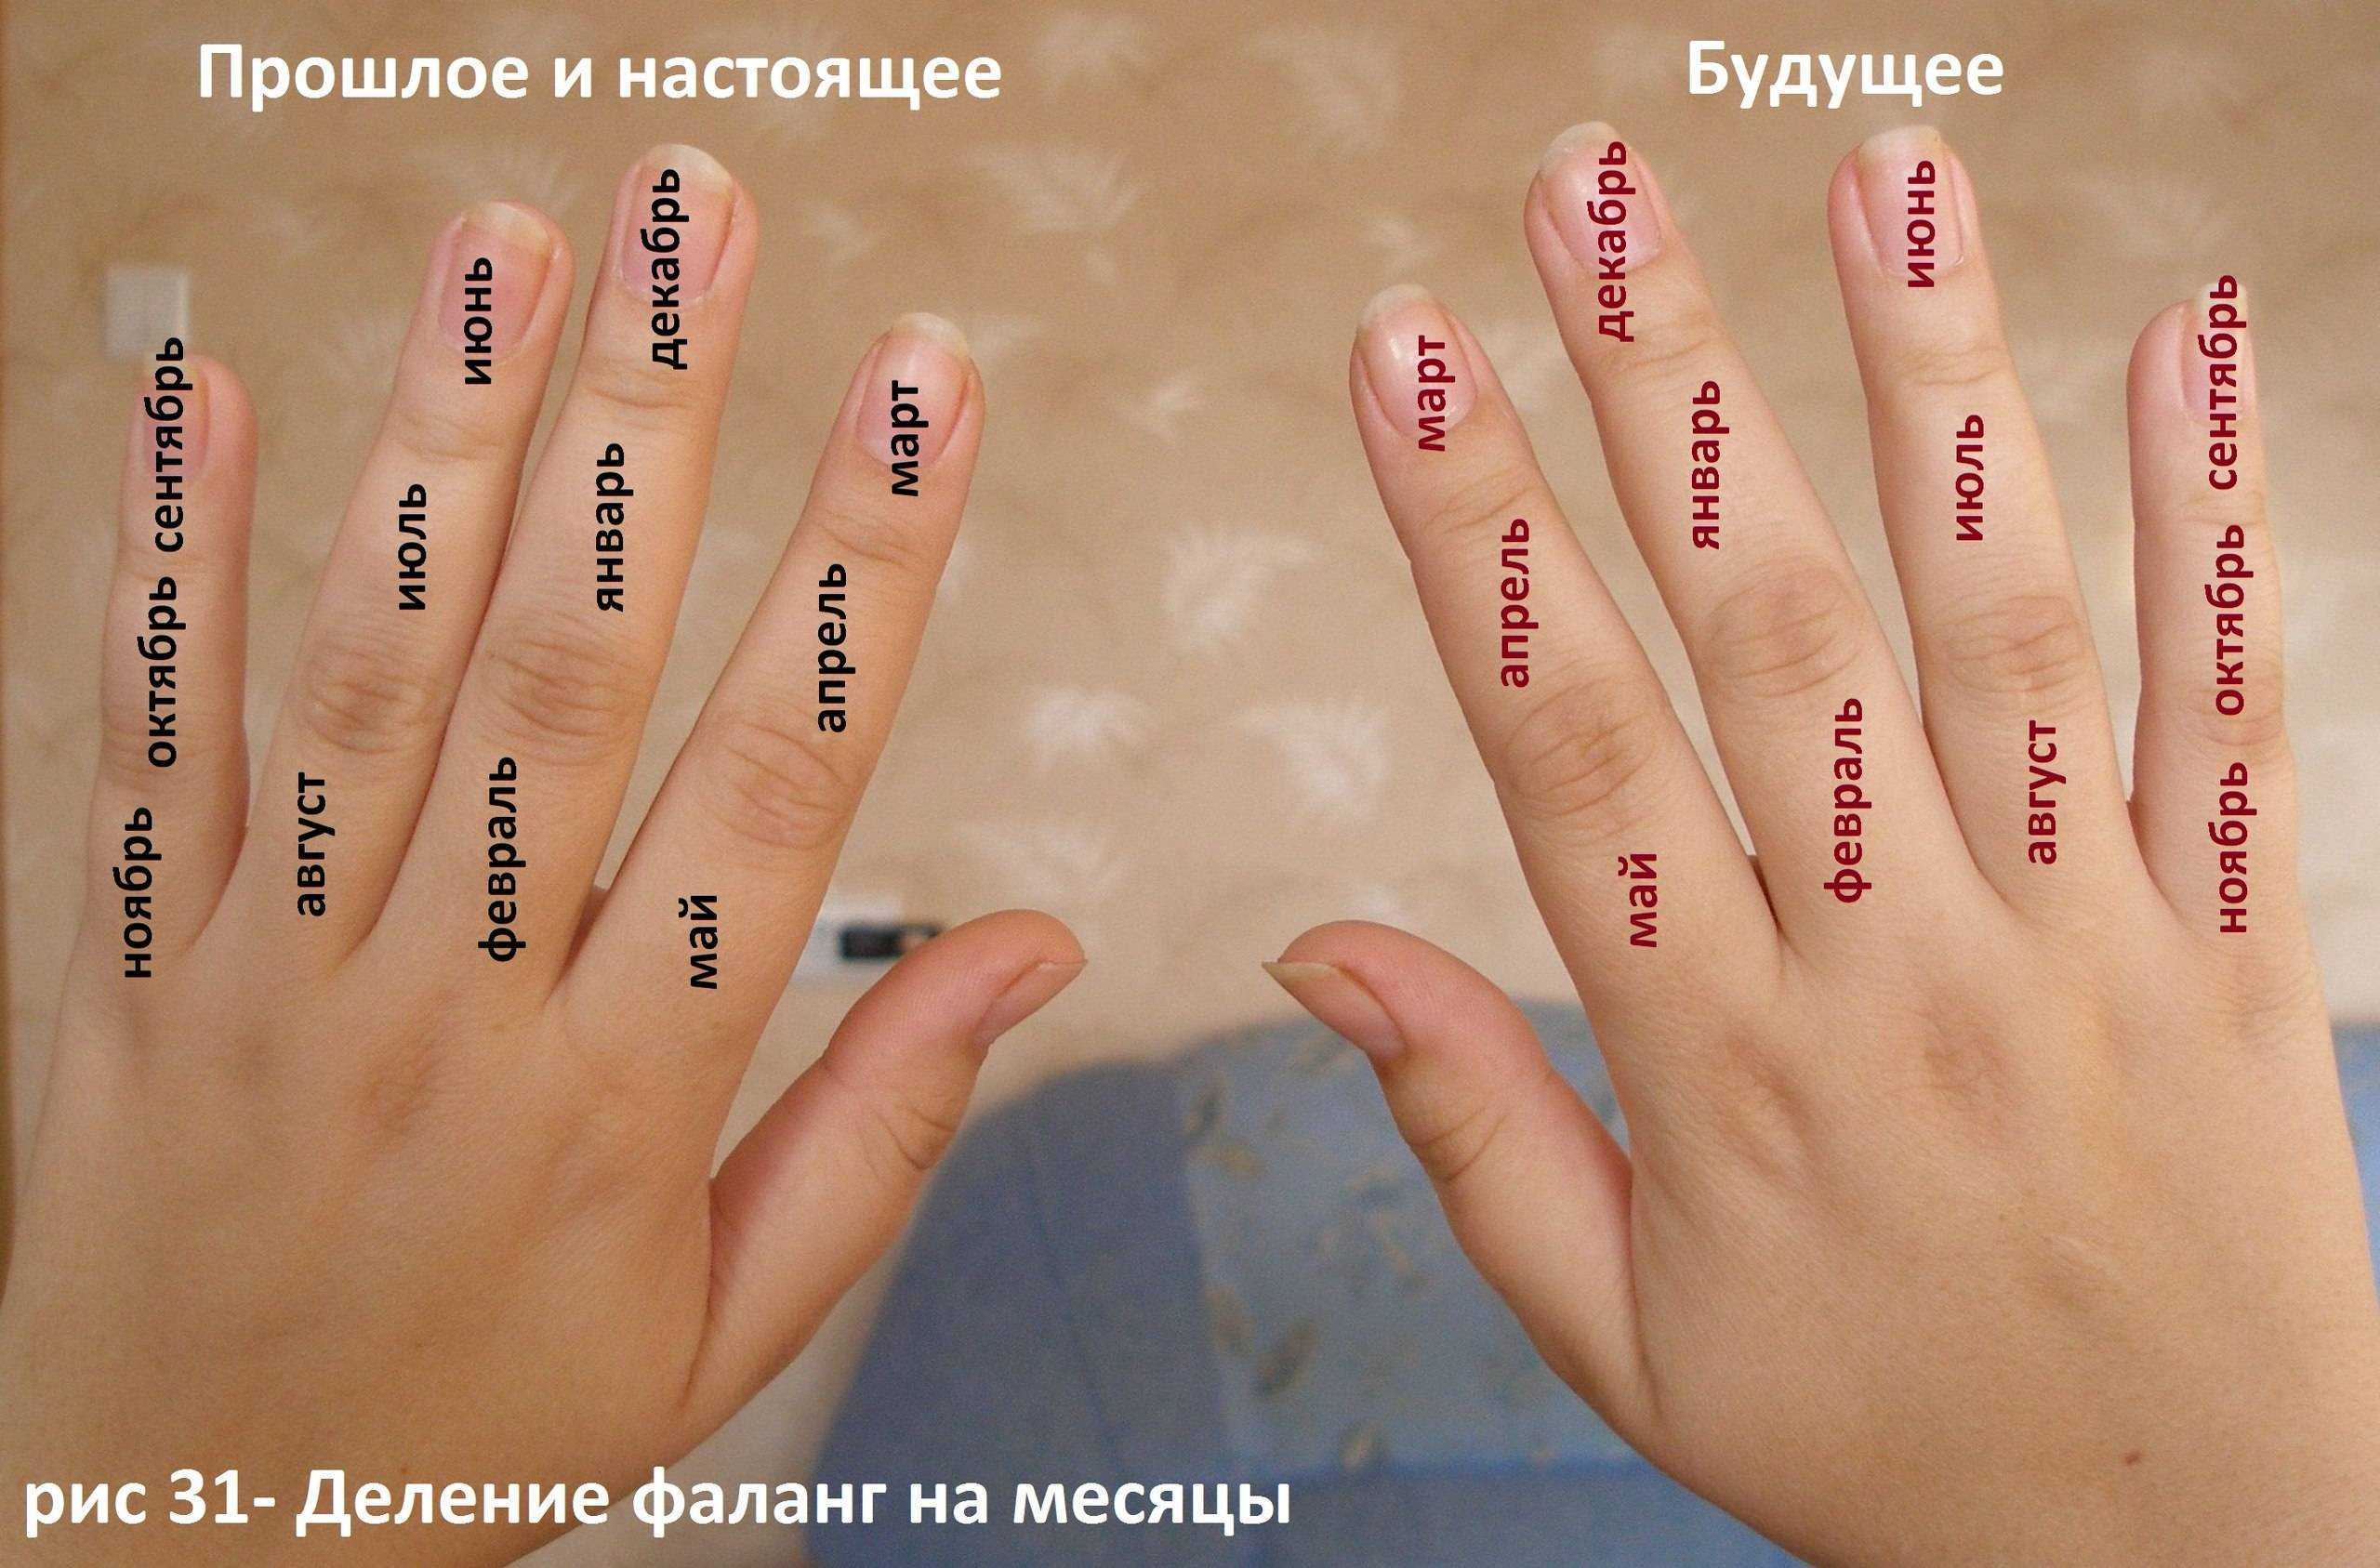 Что означает пальчики. Название пальцев. Ладонь с названием пальцев. Название пальцев на руке человека. Пальцы на руках значение.